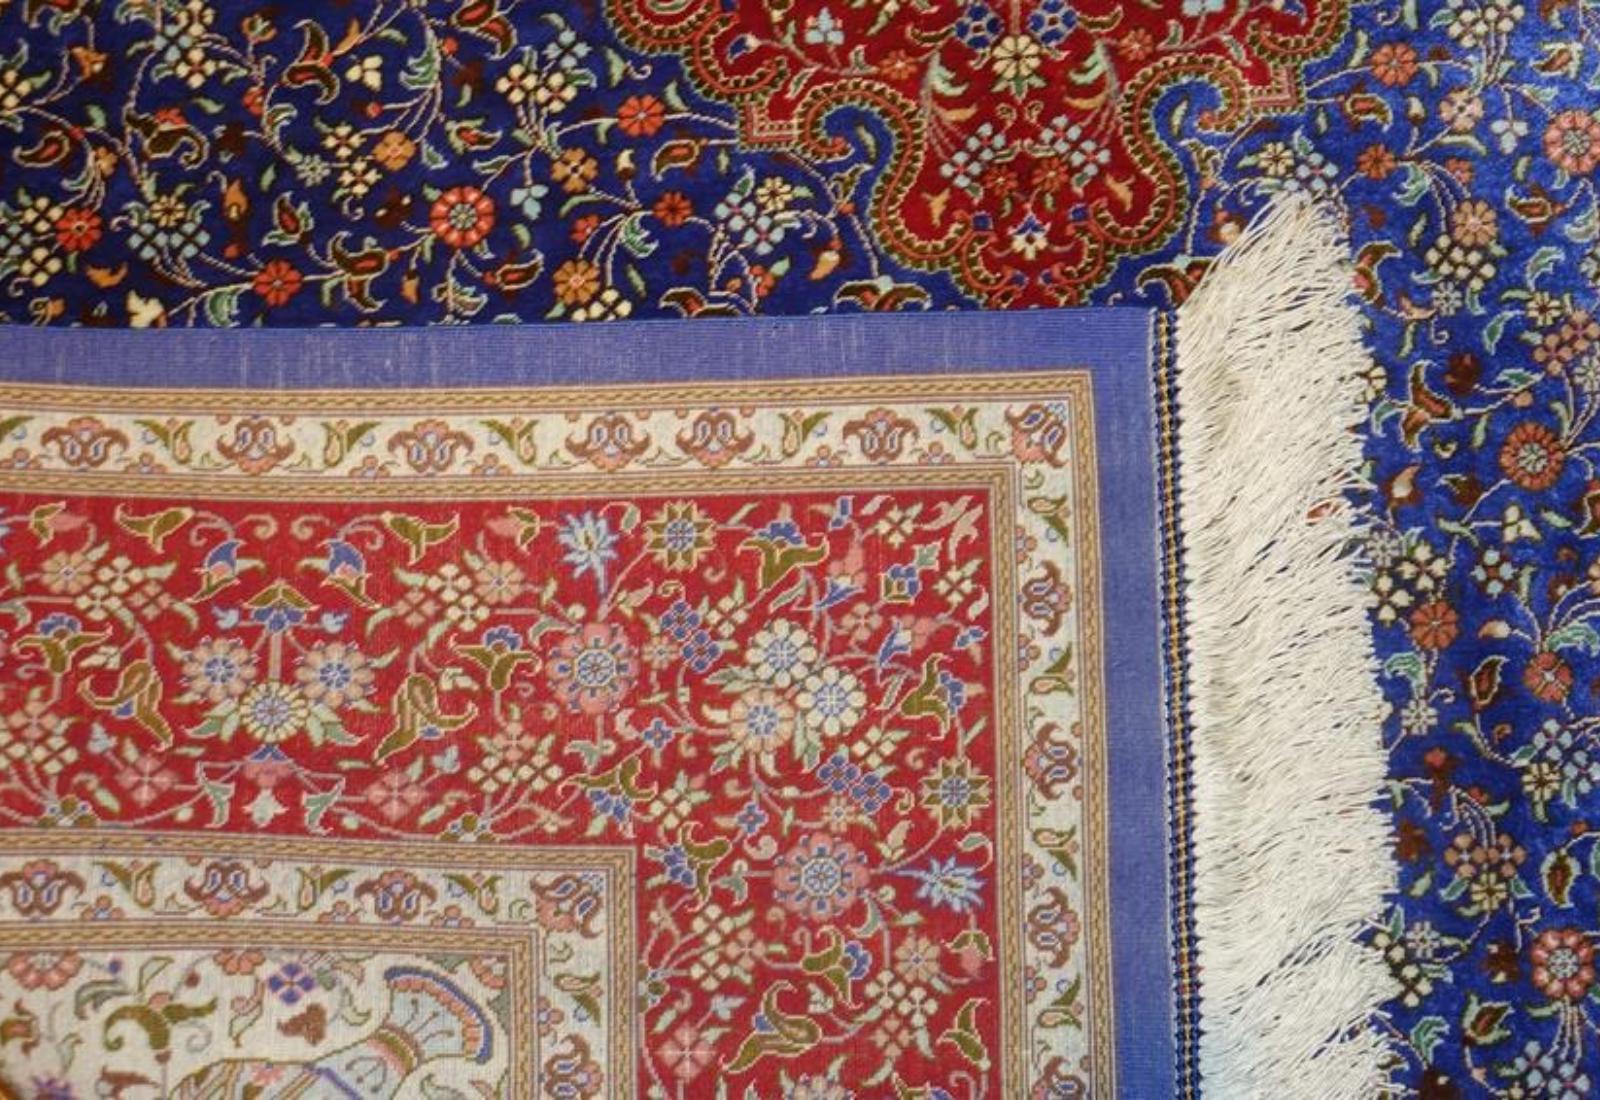 Very fine Persian Silk Qum - 6.5' 4.3' For Sale 2